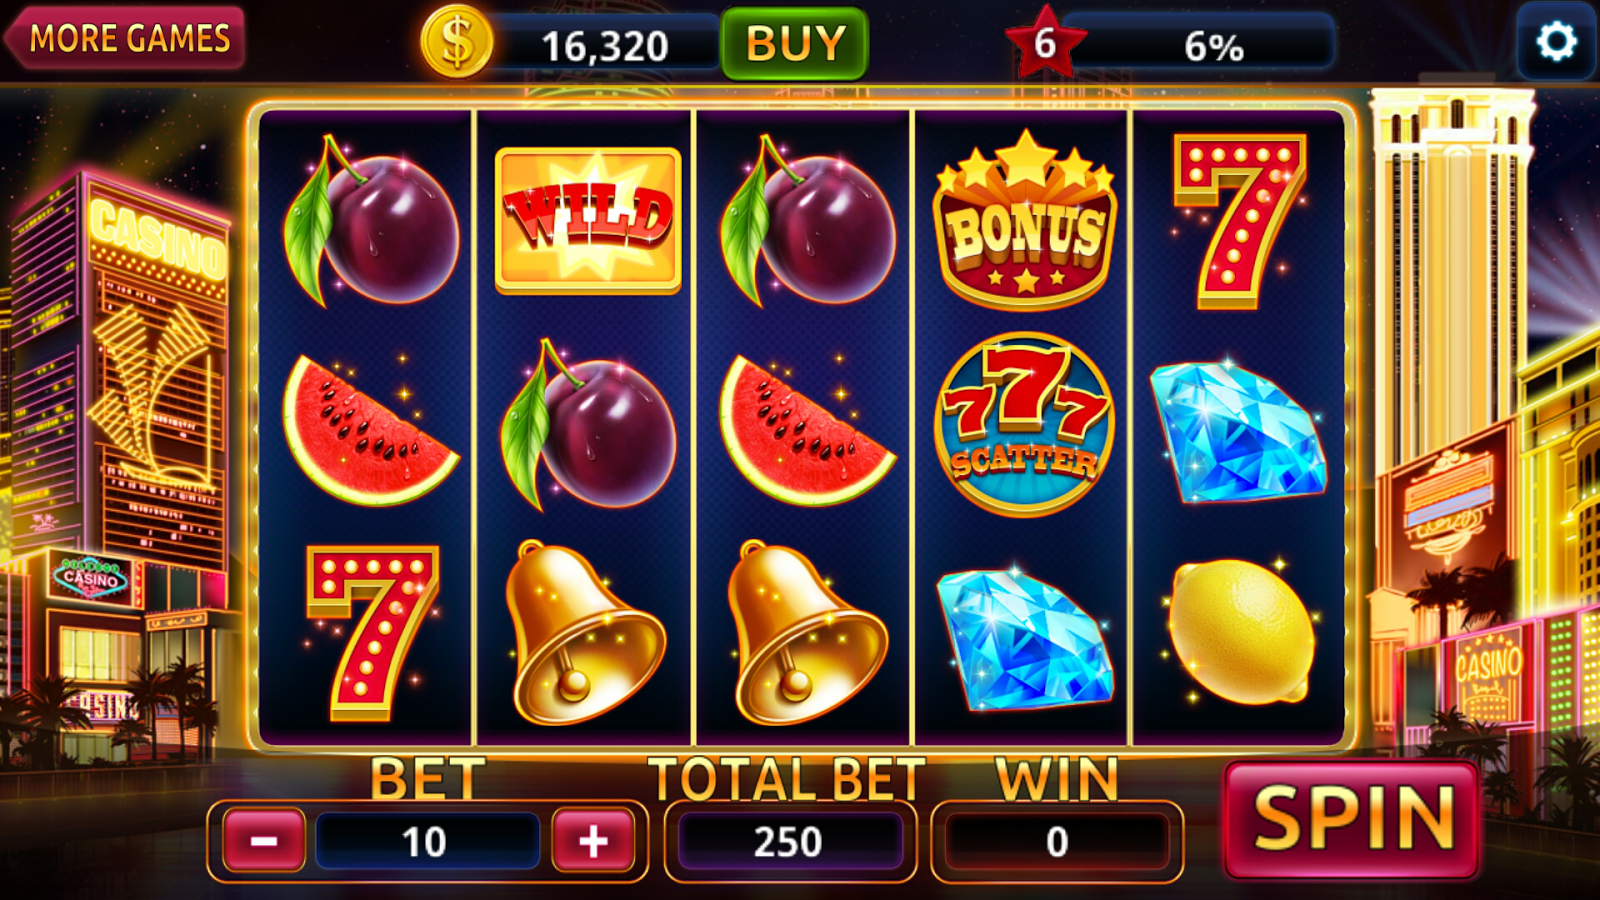 Казино онлайн играть go money slotik бк casino azino777 com